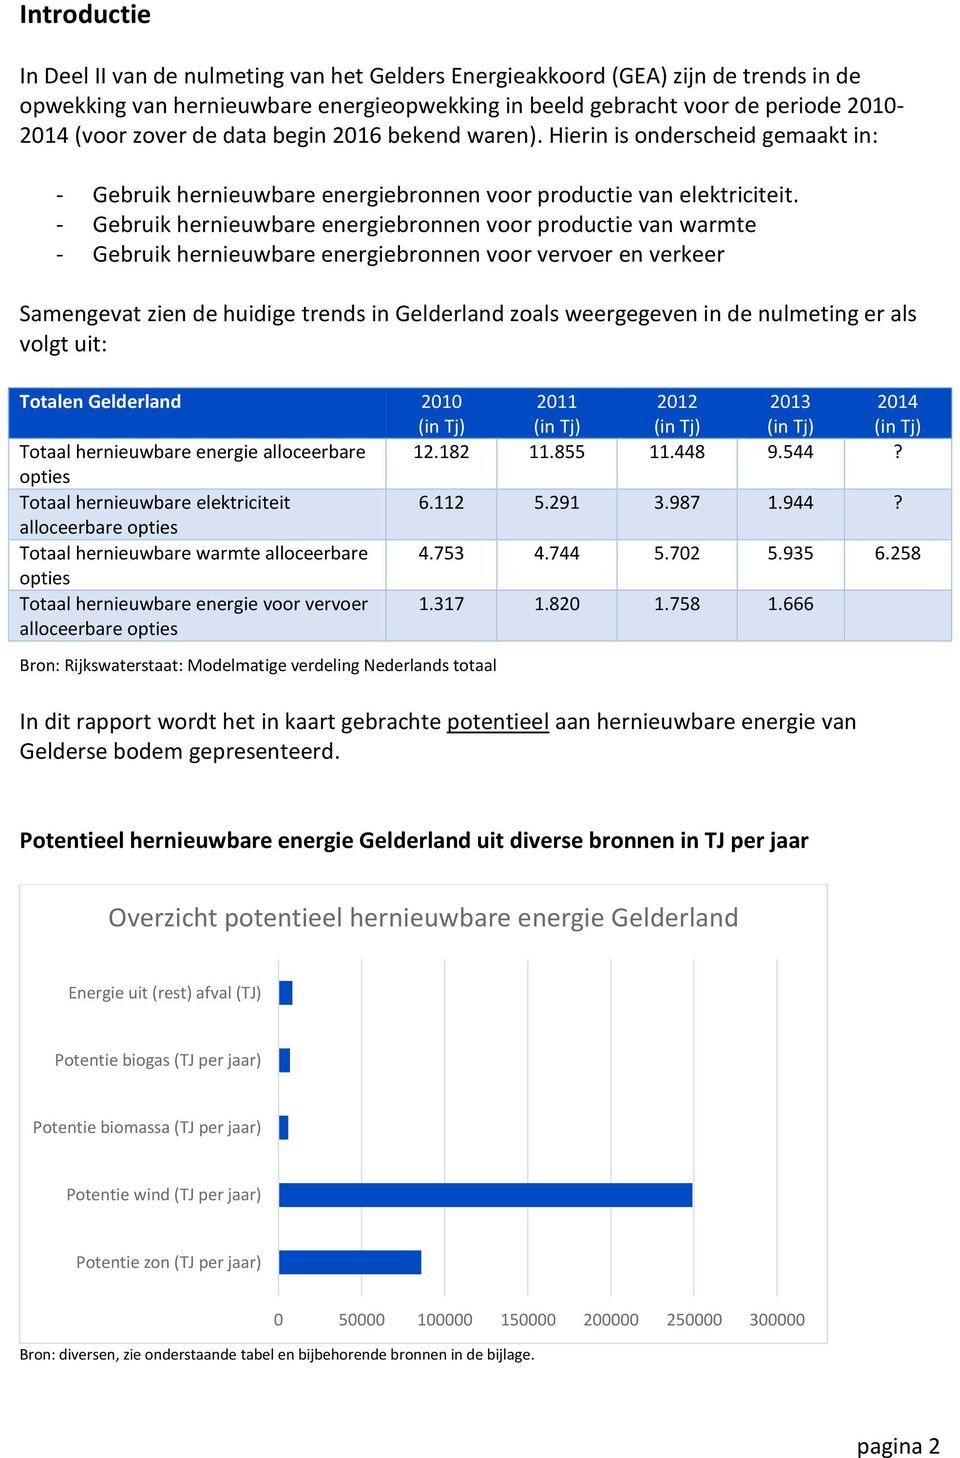 - Gebruik hernieuwbare energiebronnen voor productie van warmte - Gebruik hernieuwbare energiebronnen voor vervoer en verkeer Samengevat zien de huidige trends in Gelderland zoals weergegeven in de